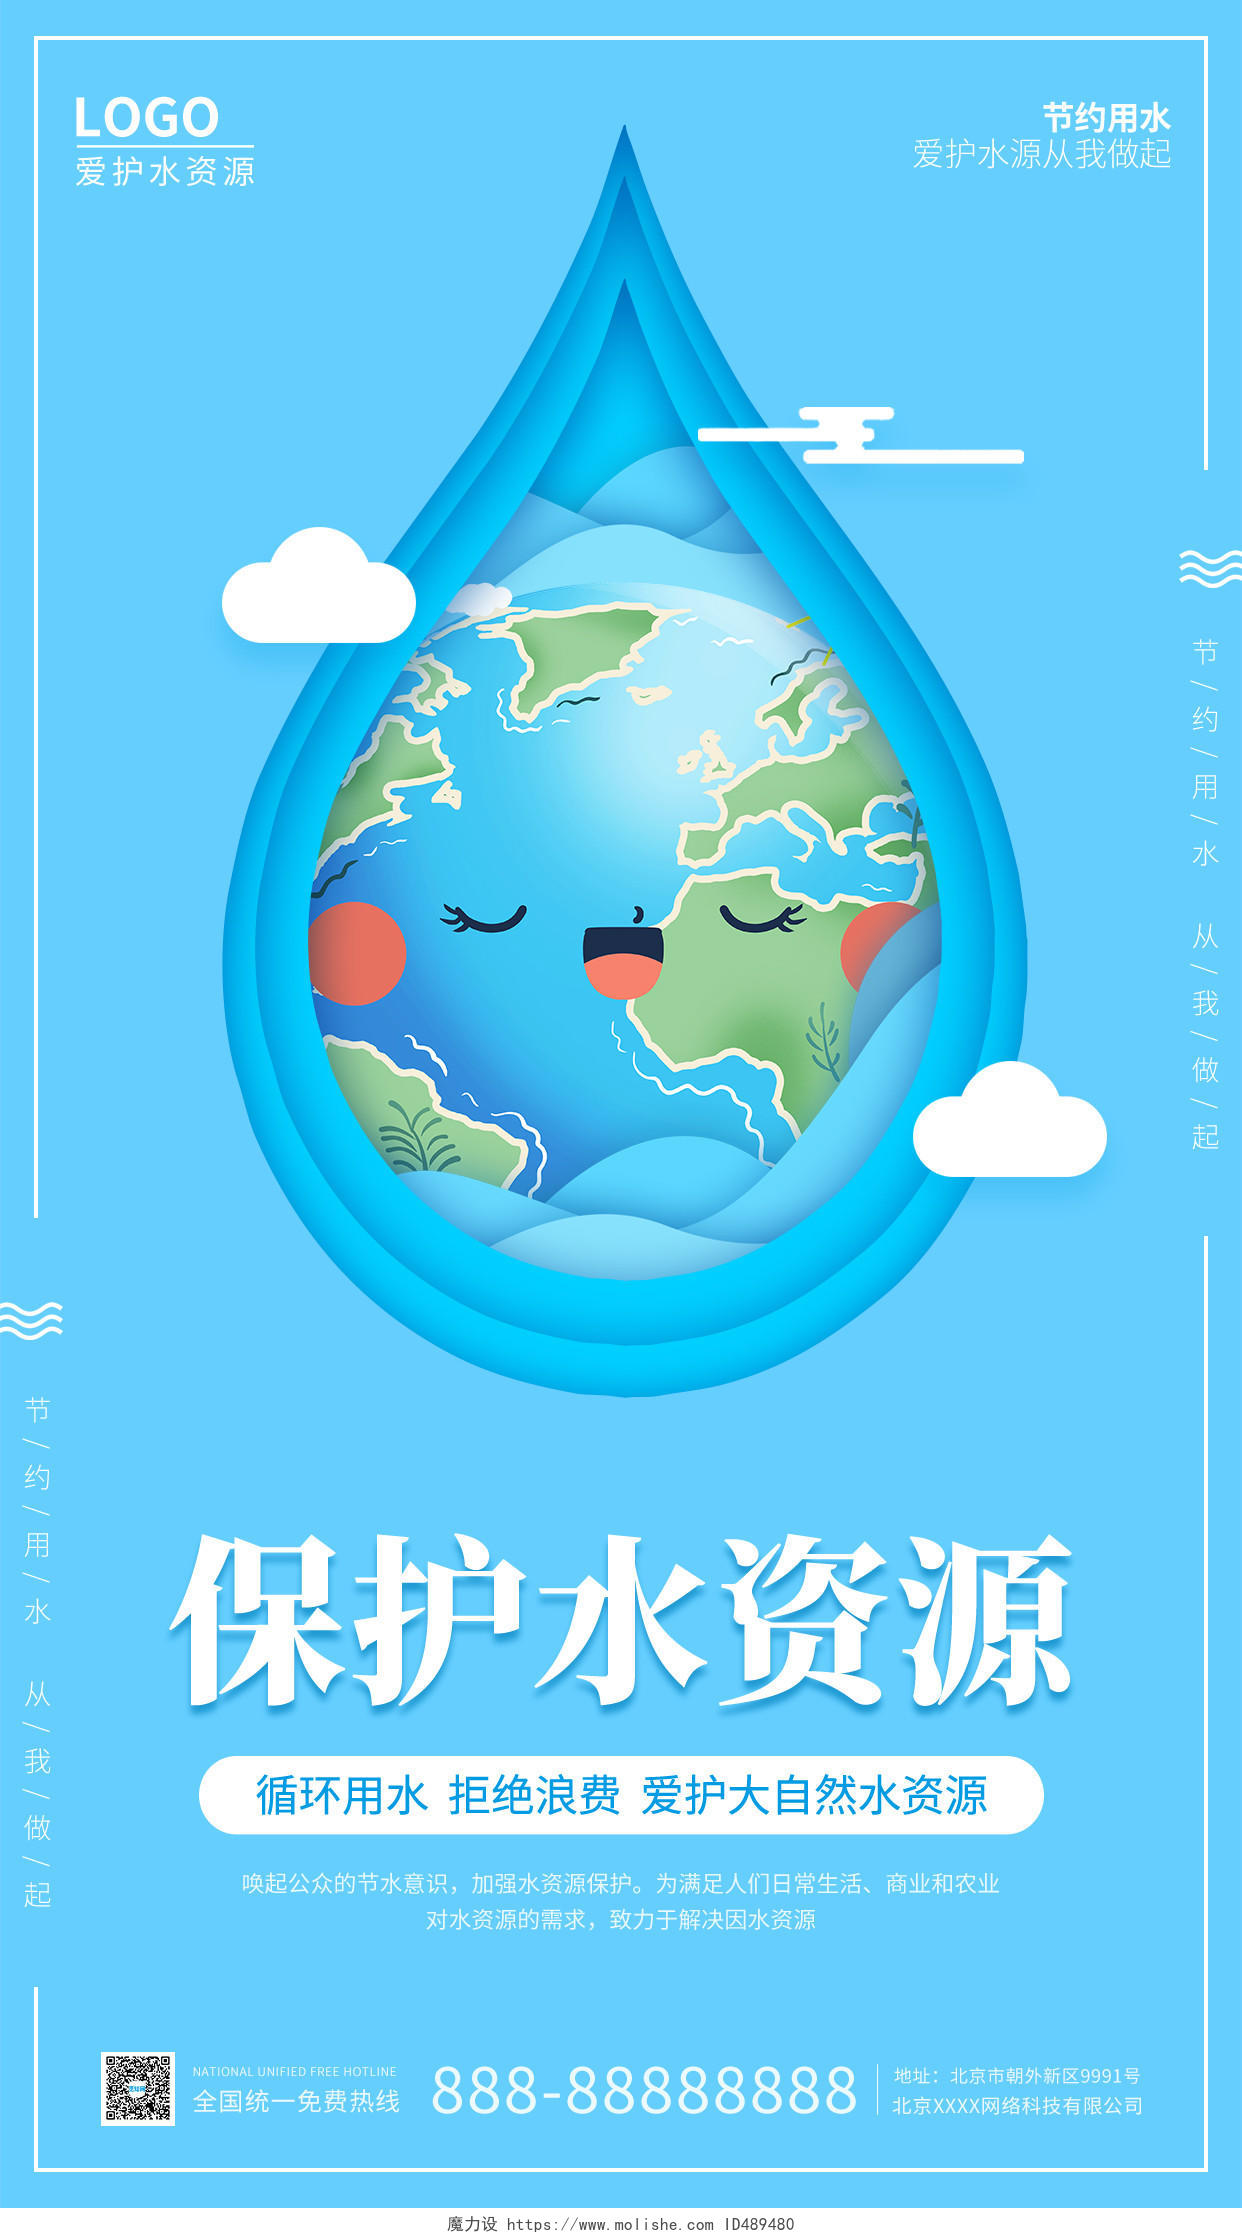 蓝色插画简约大气保护水资源手机海报全国城市节约用水宣传周